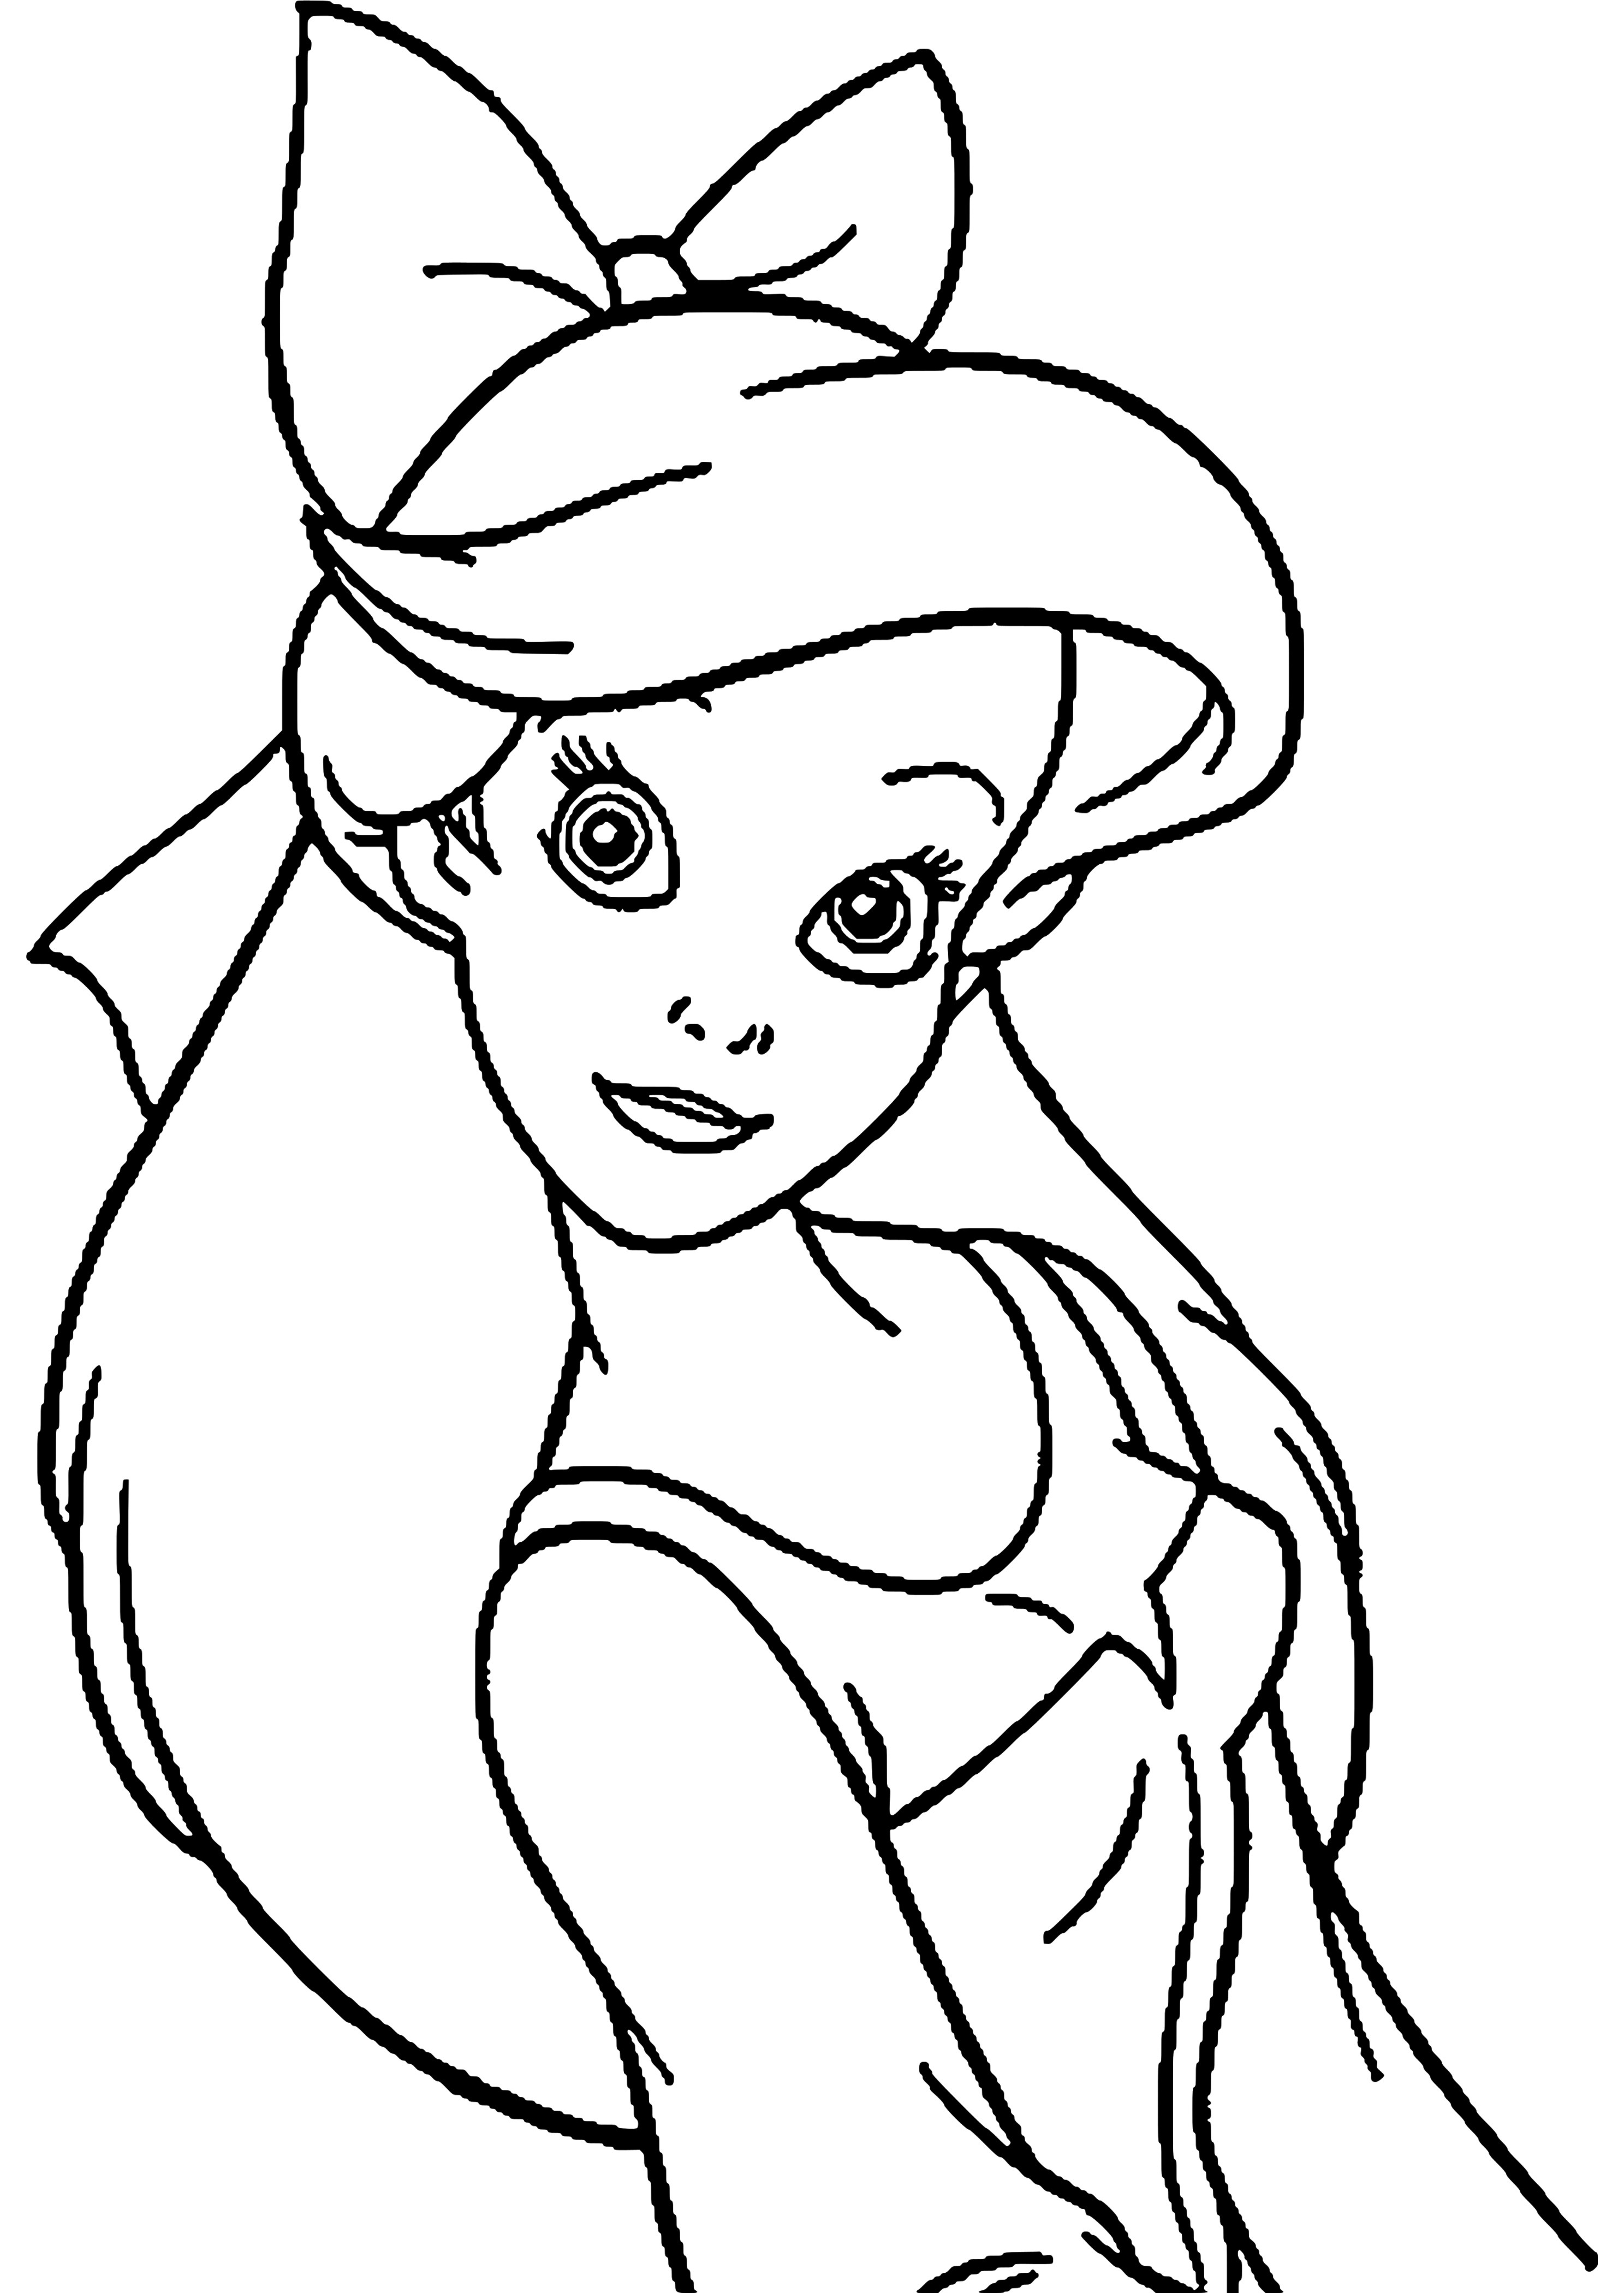 Раскраска принцессы Disney Ариэль